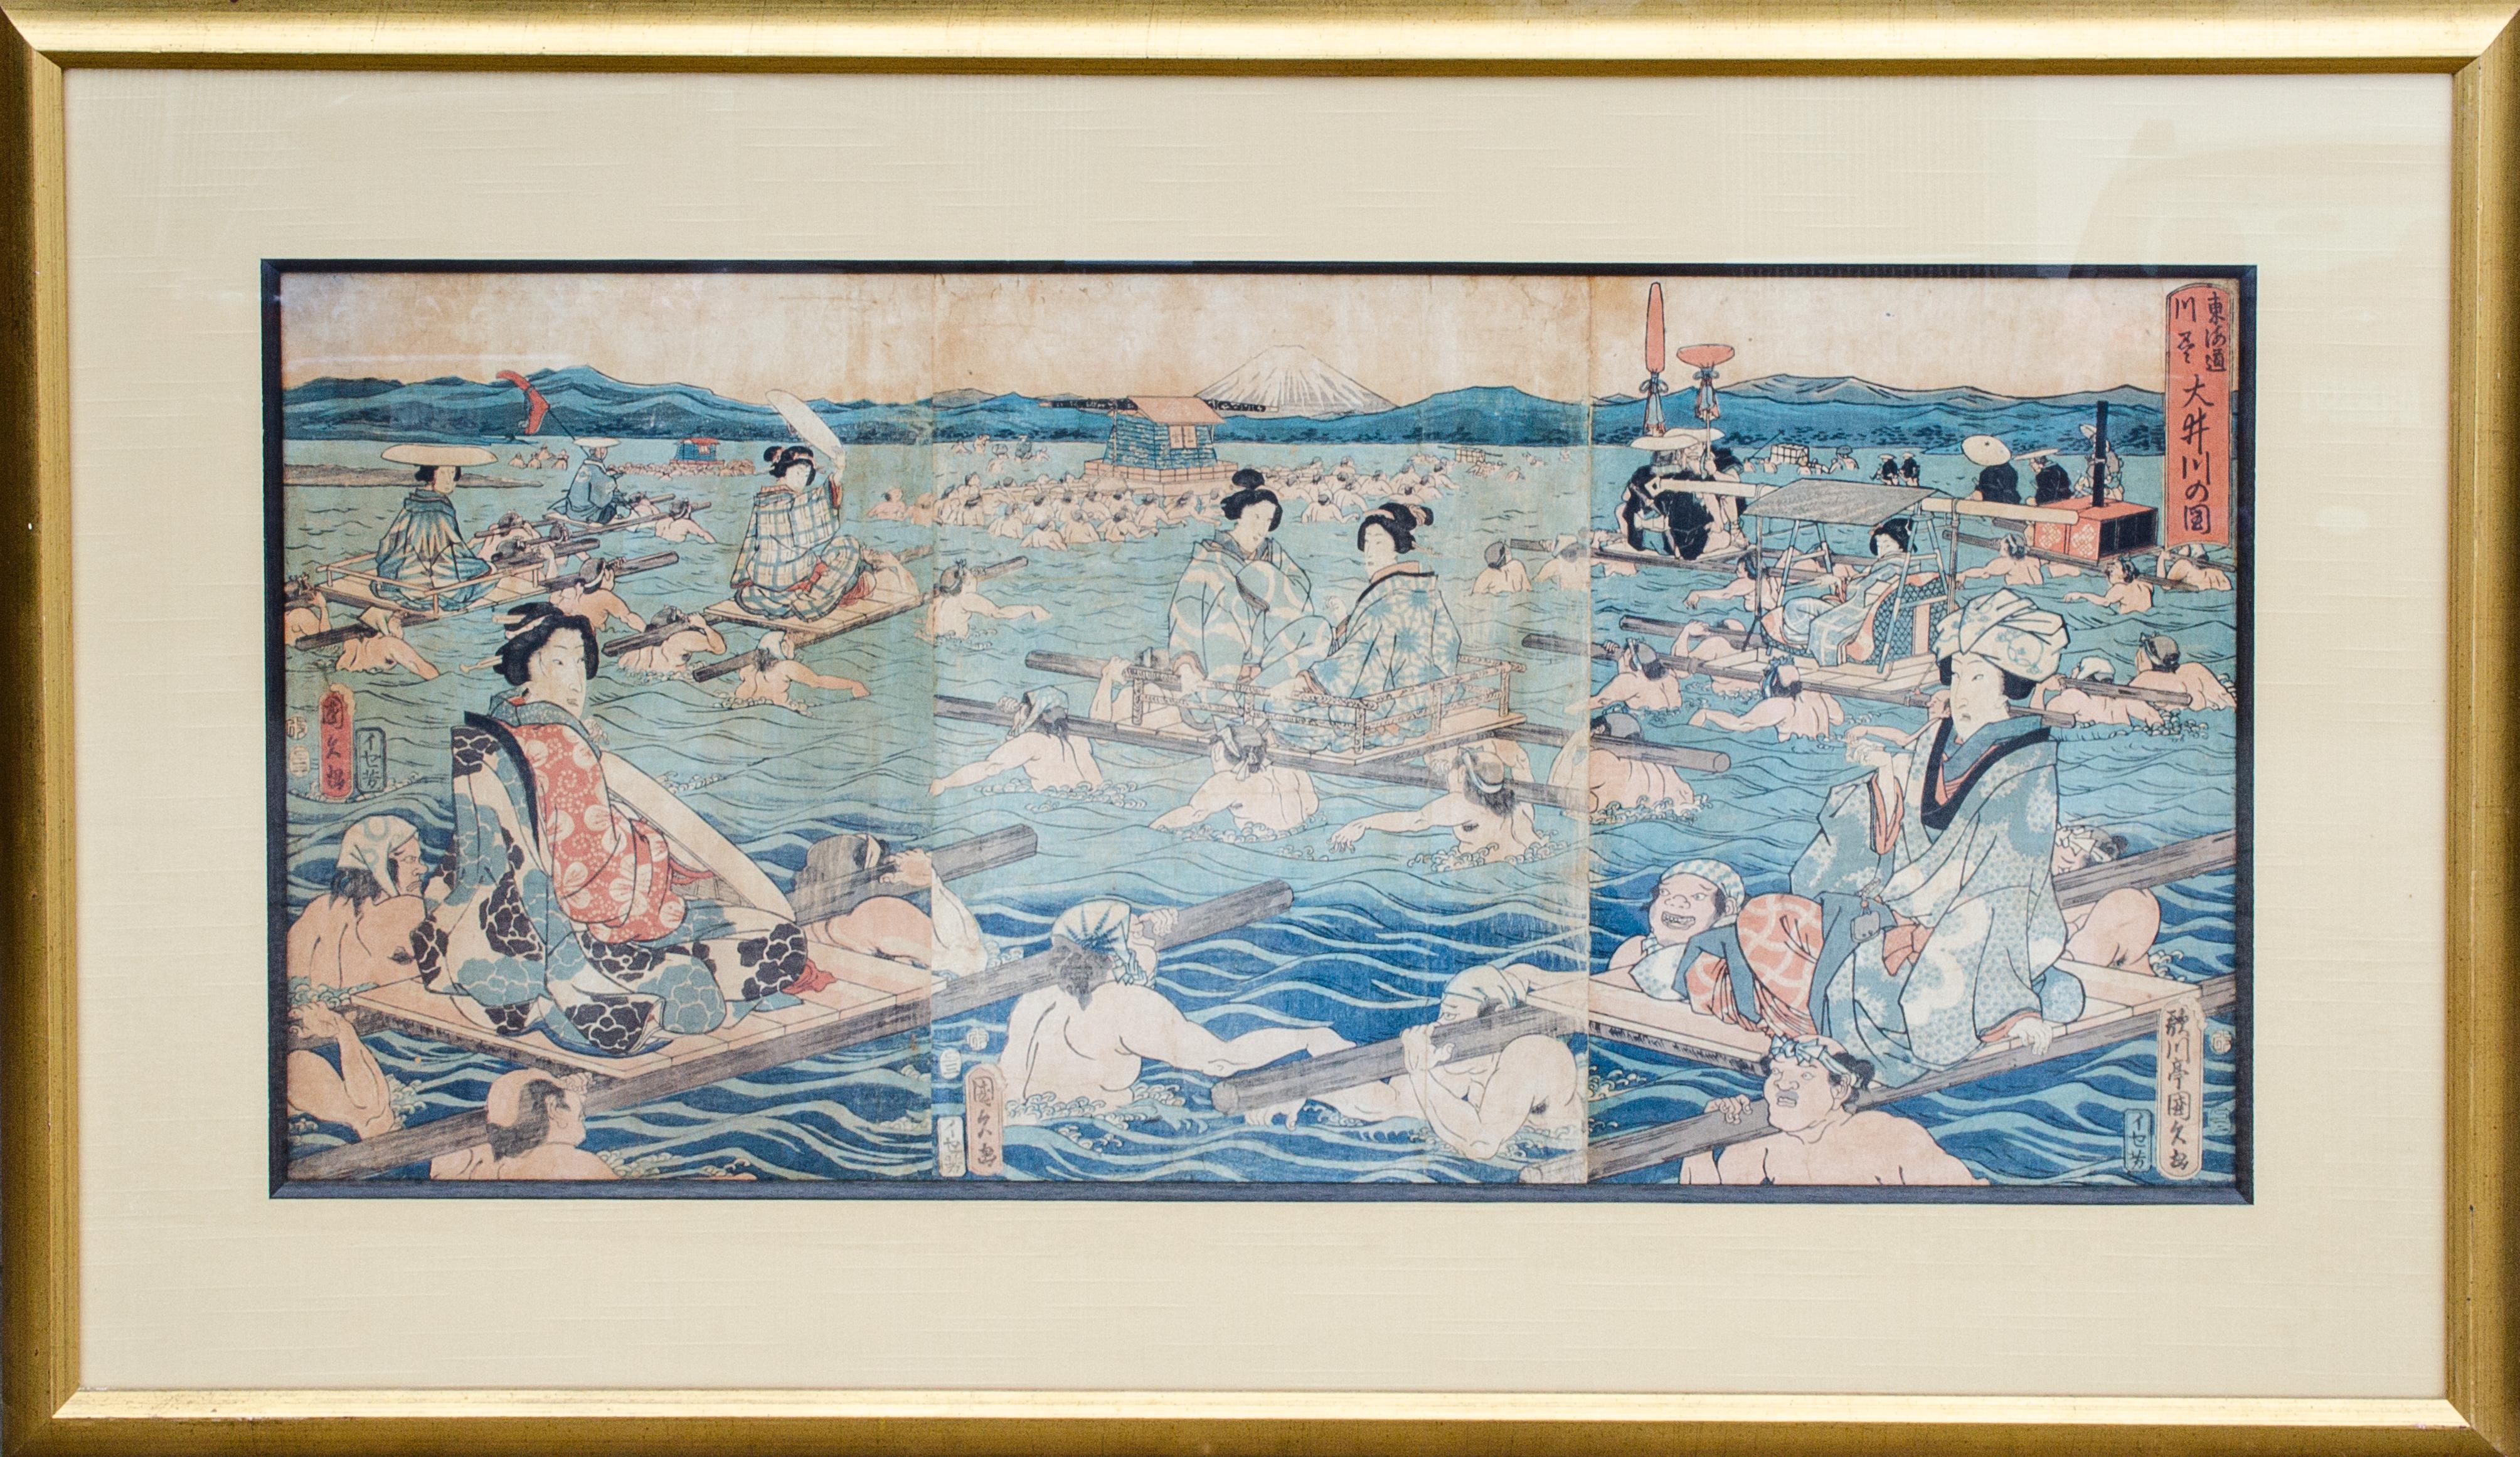 Seltene Szene des Adels auf Palanquins über Wasser, Holzschnitt im Ukiyo-e-Stil – Print von Unknown